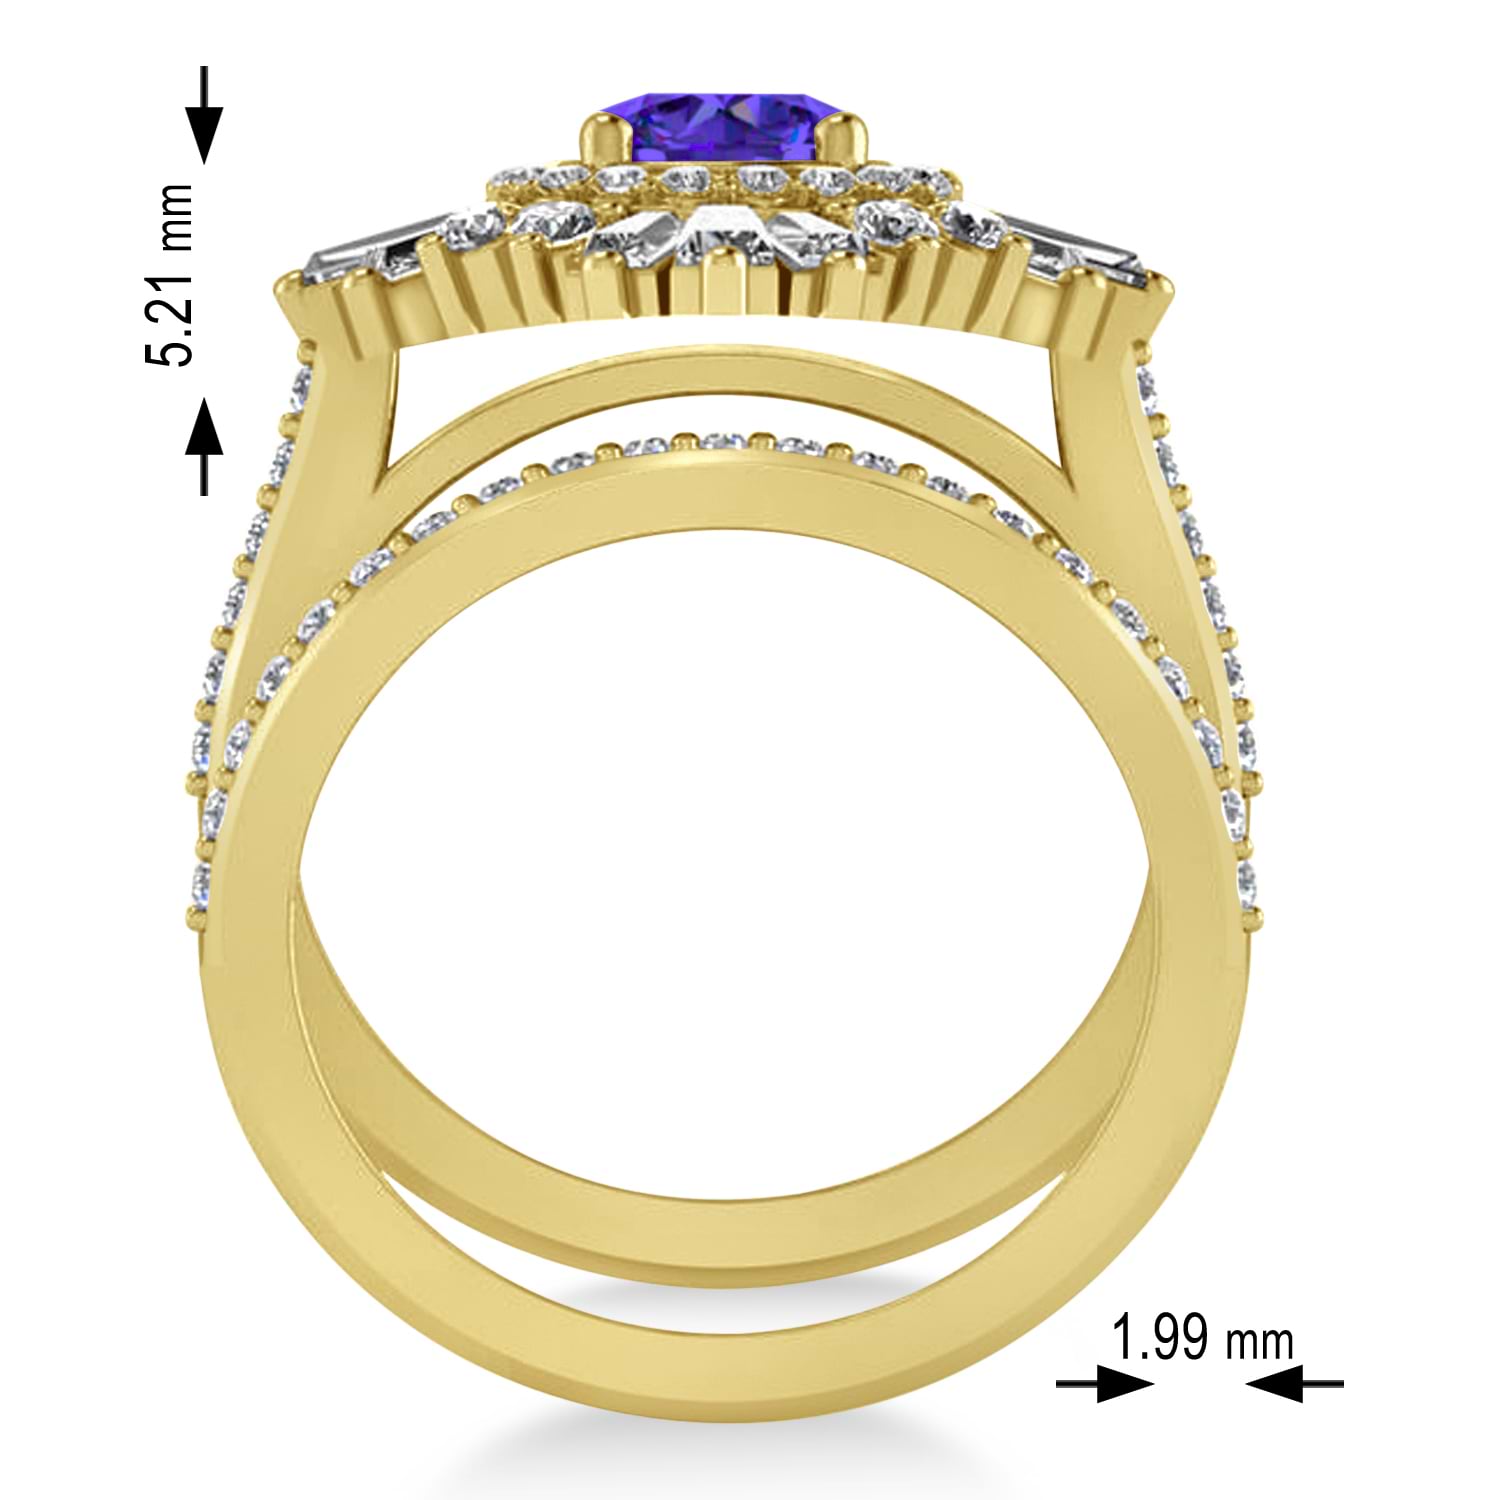 Tanzanite & Diamond Ballerina Engagement Ring 14k Yellow Gold (2.74 ctw)